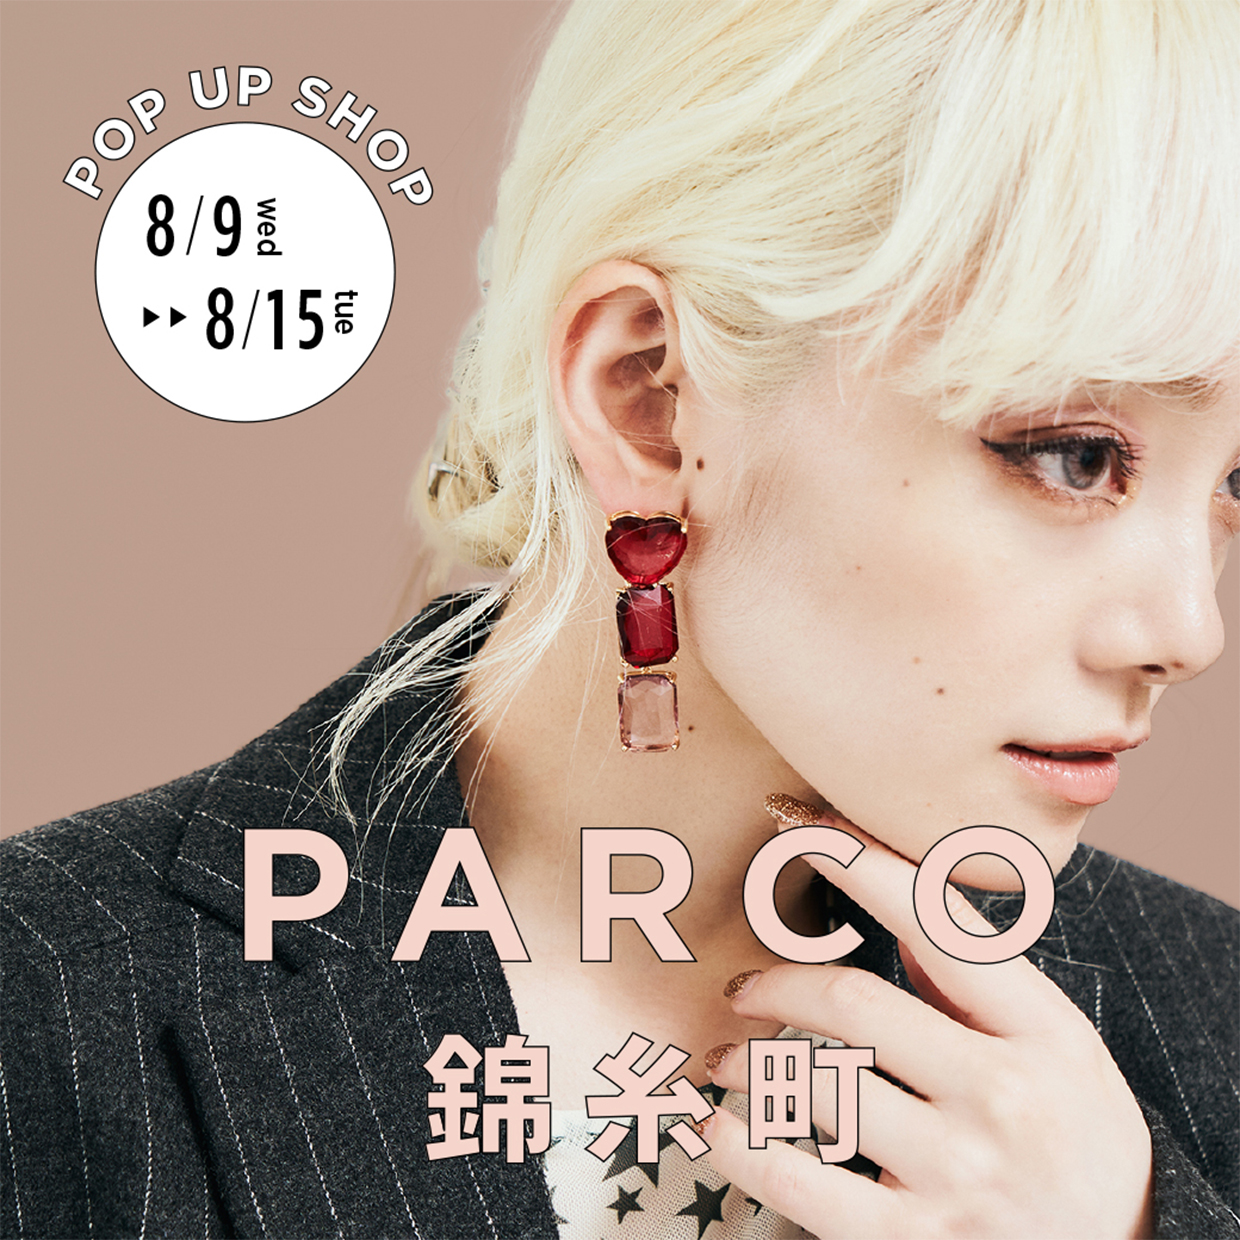 I AM THE 1 POP UP SHOP @ PARCO 錦糸町店